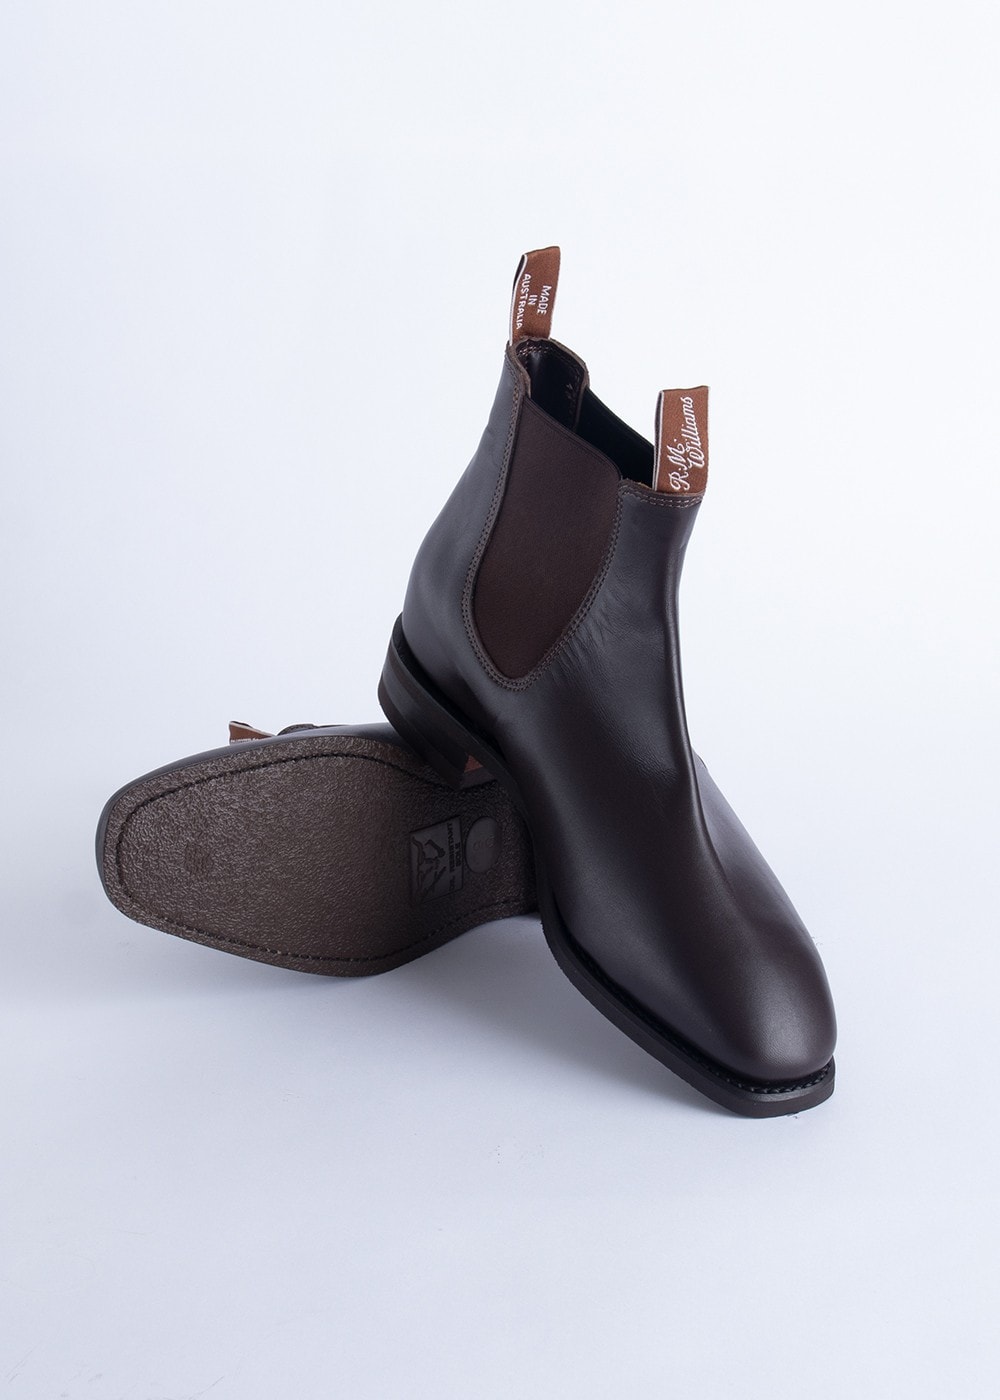 r.m. williams comfort craftsman boot